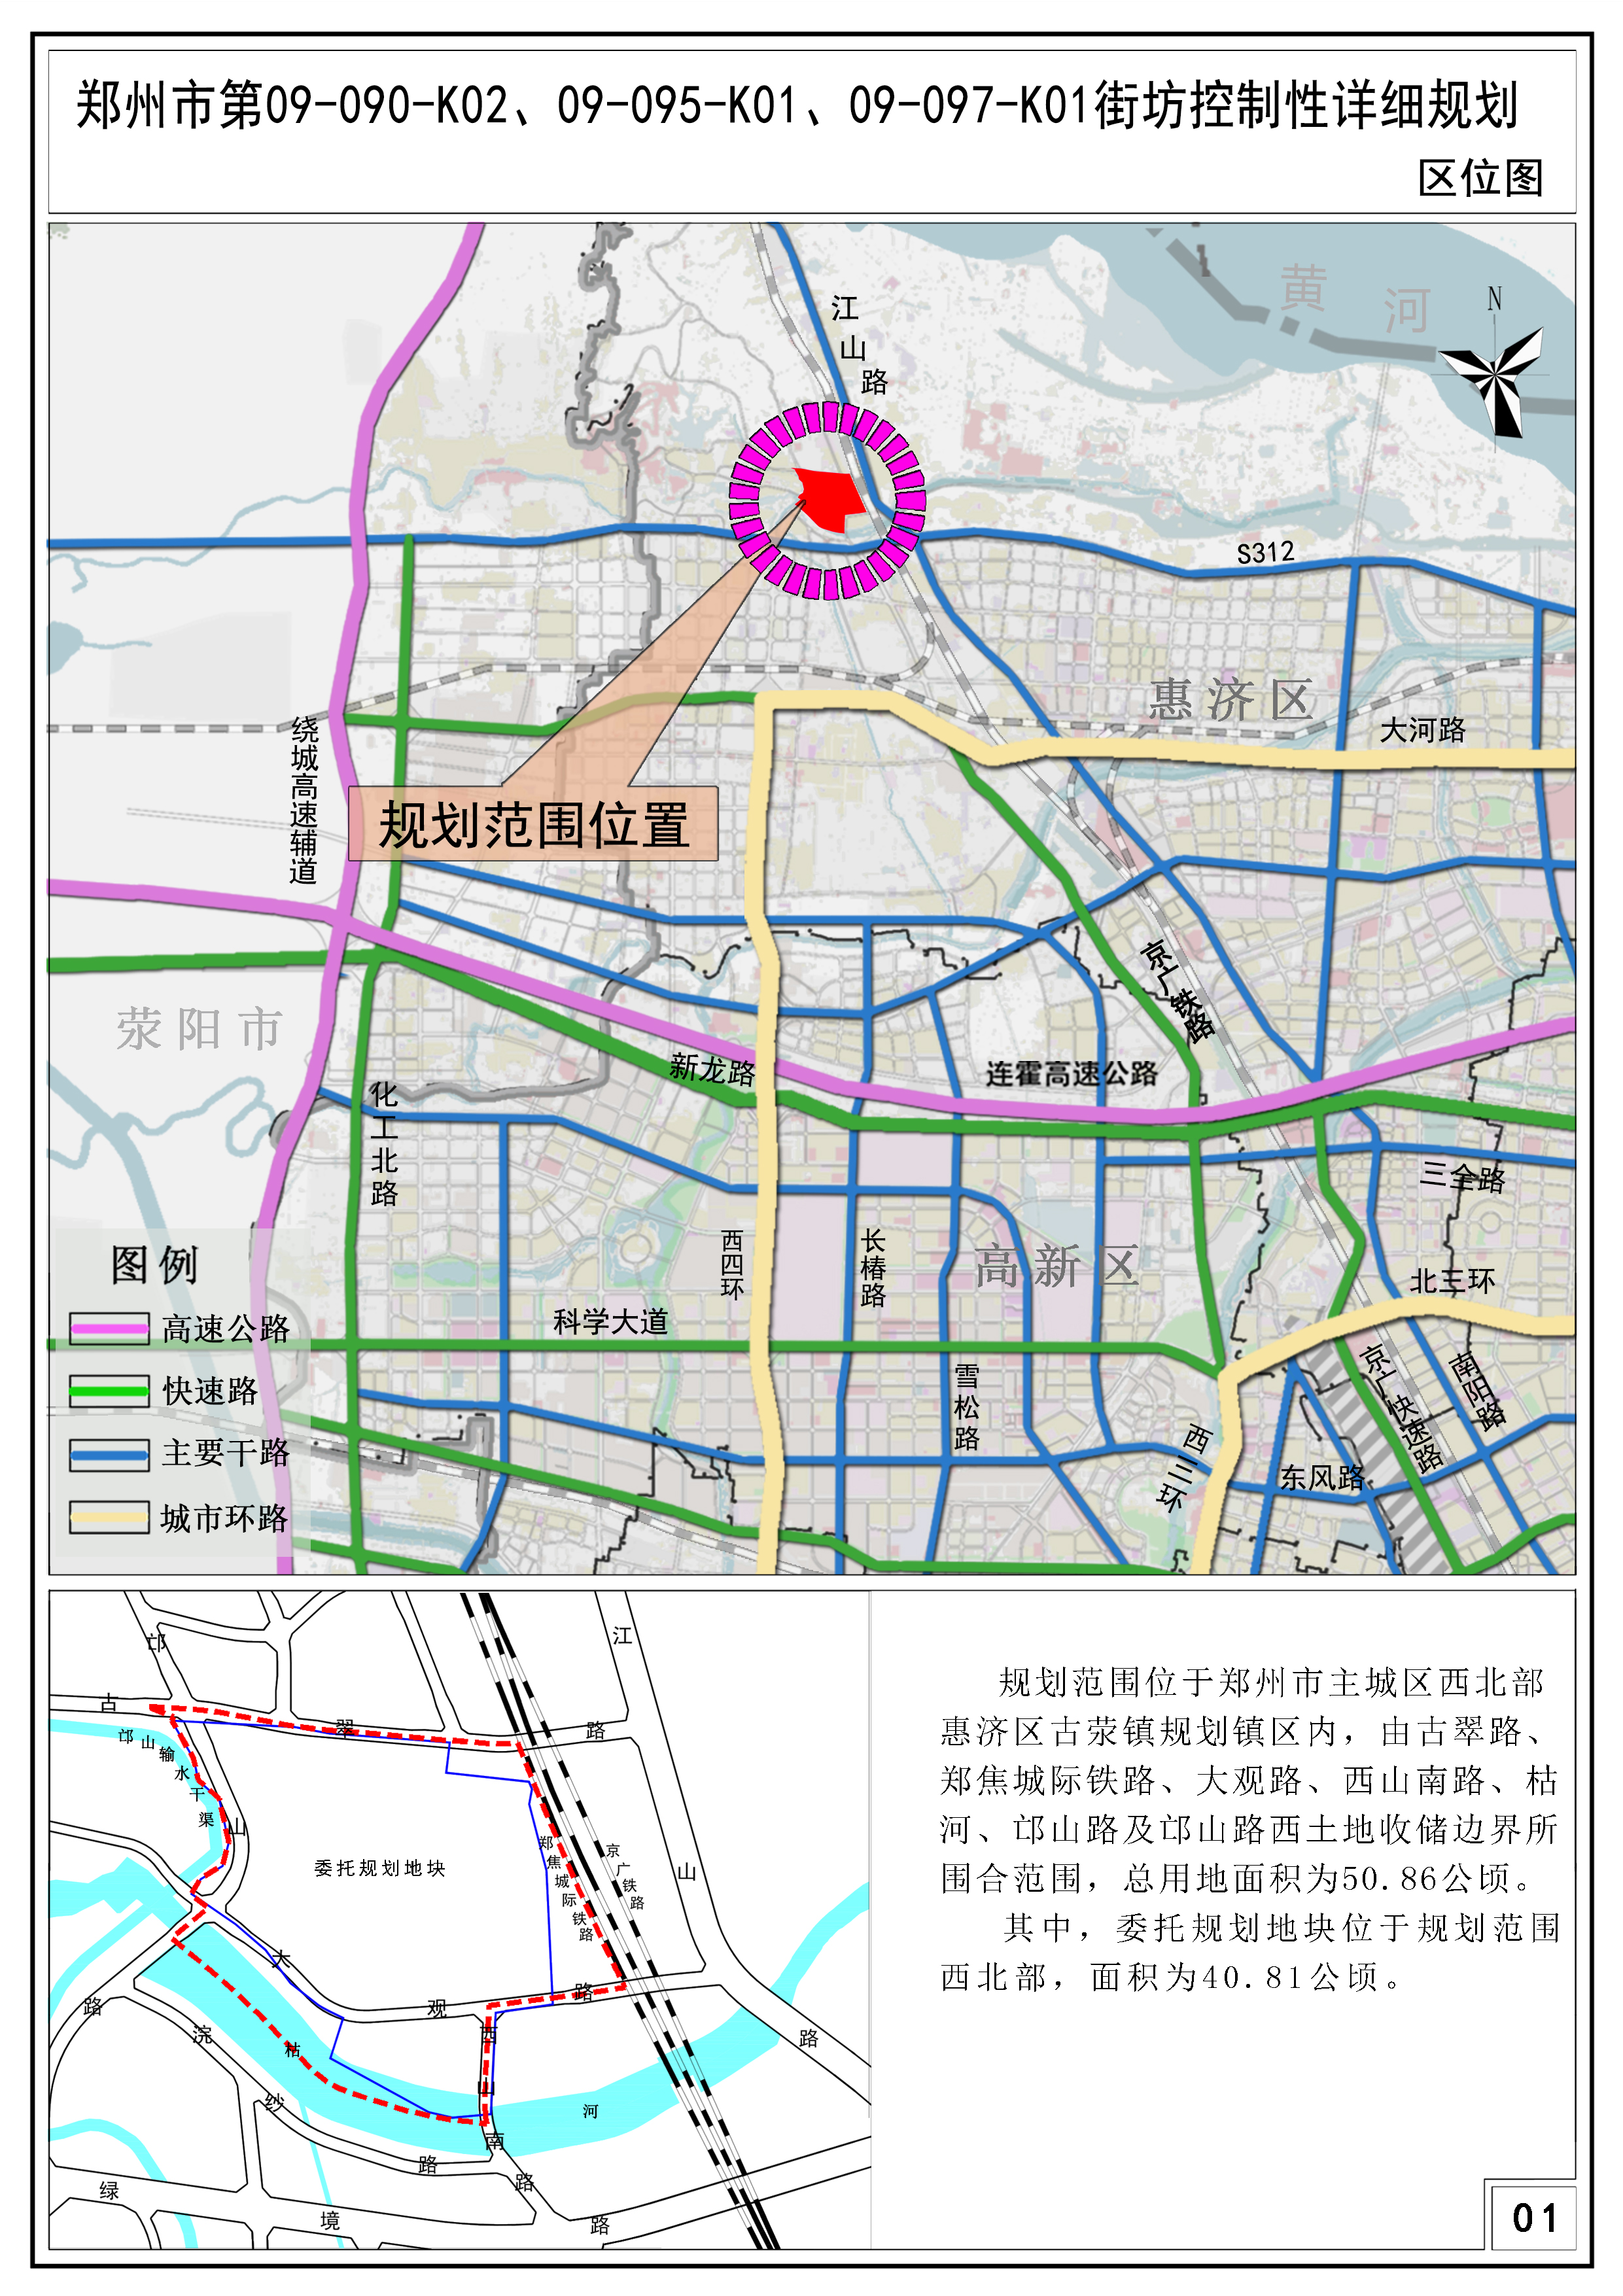 郑州市第09-090-K02、09-095-K01、09-097-K01街坊控制性详细规划